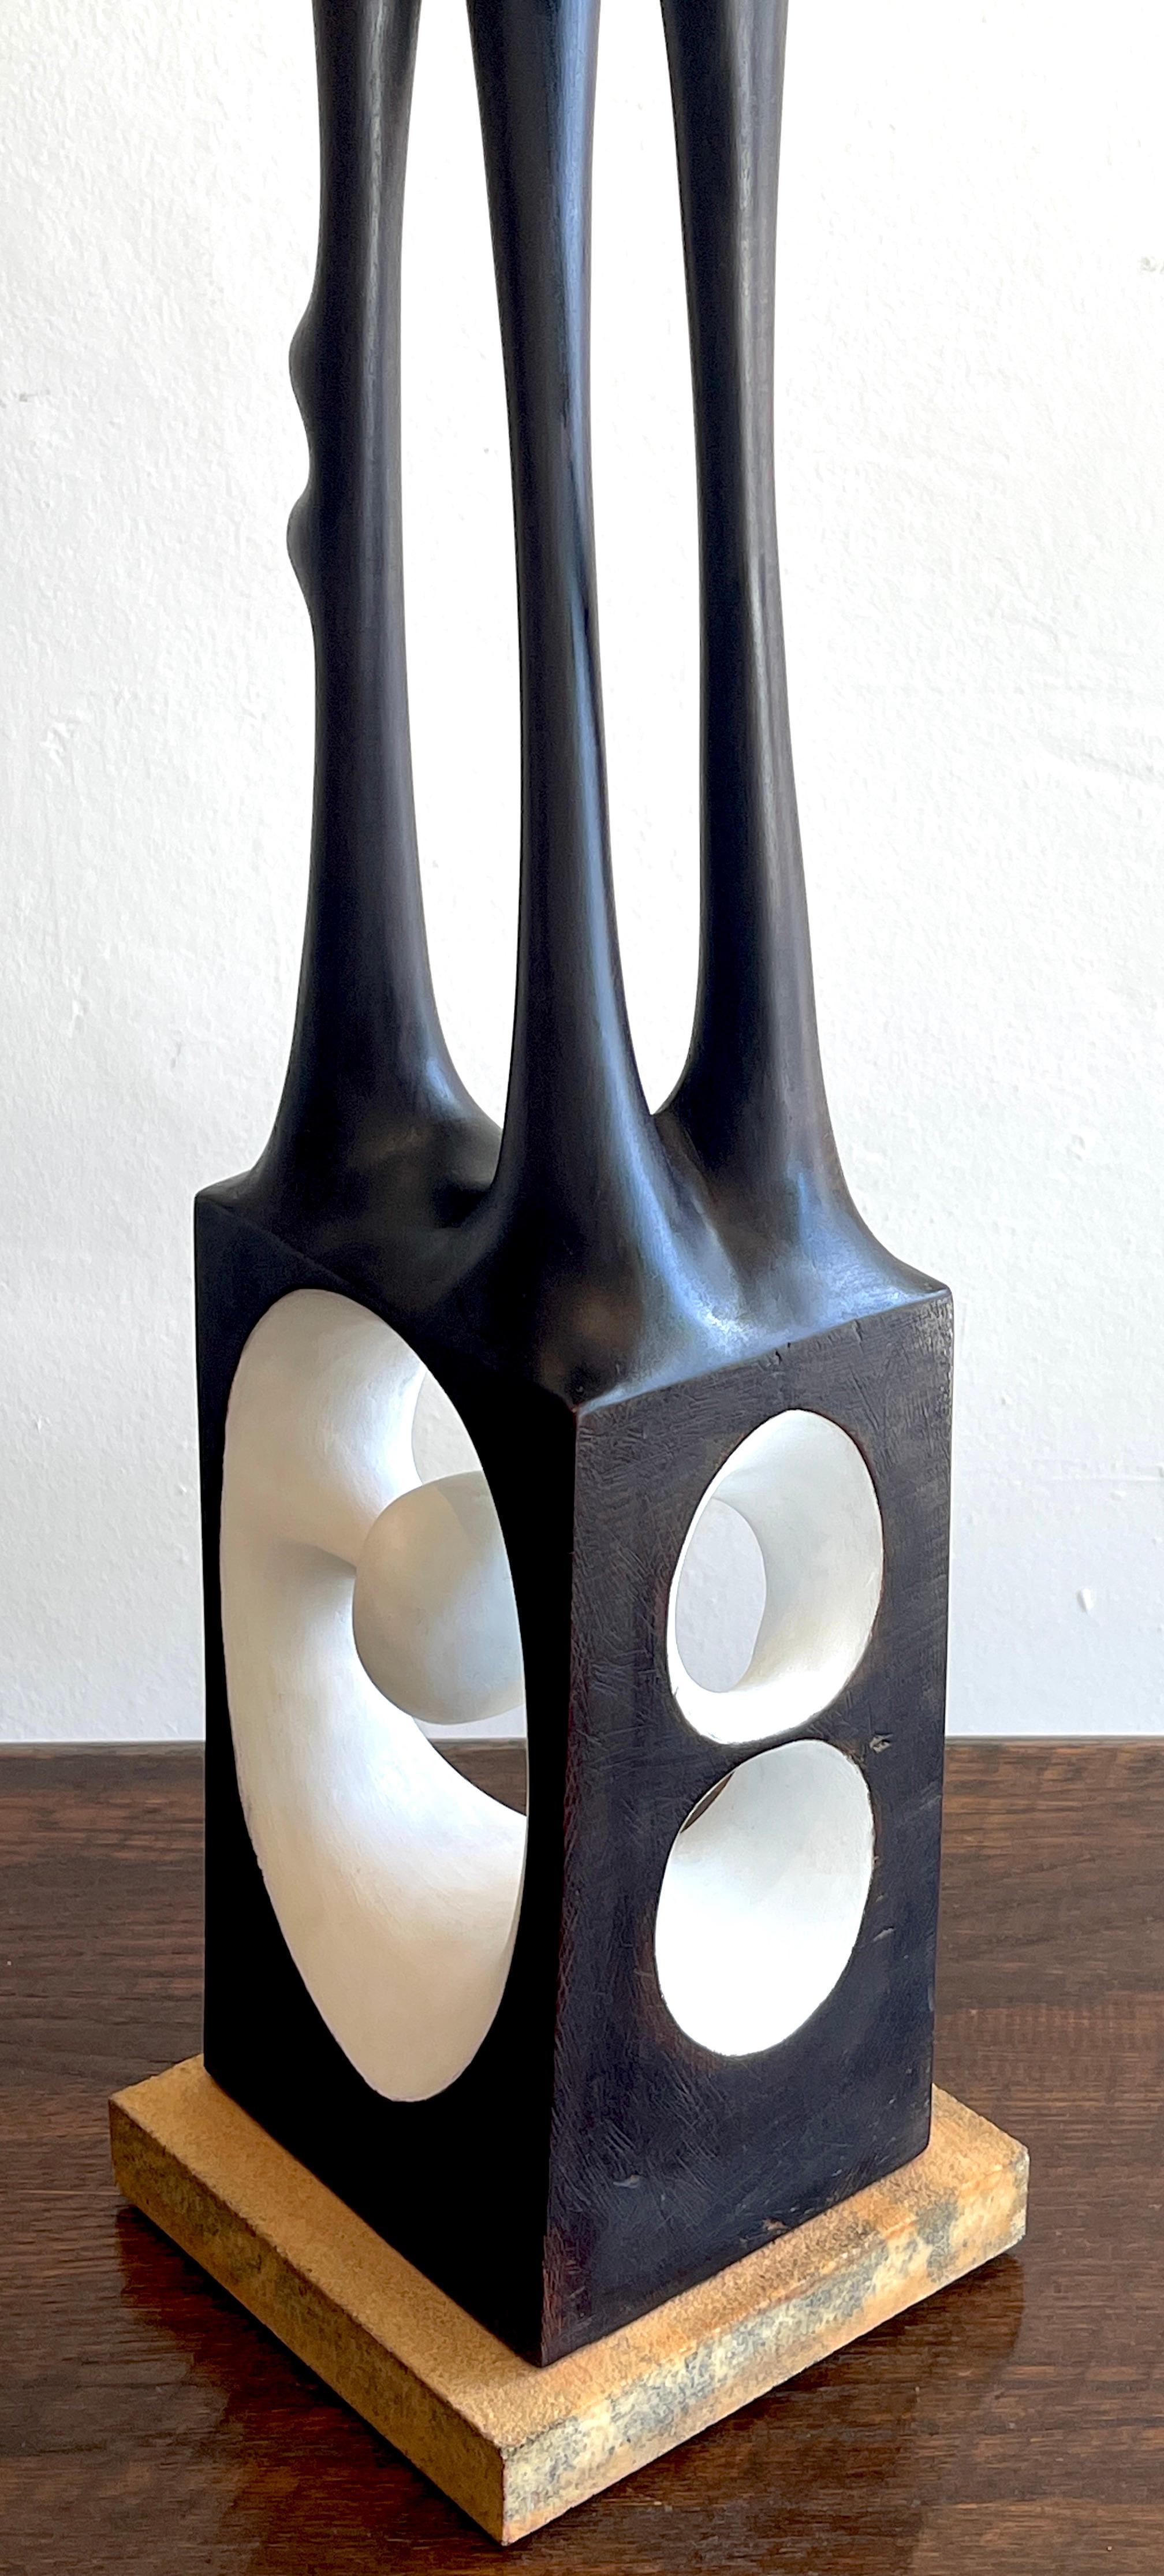 Agustín Cárdenas Abstract Polychromed Wood Sculpture 4